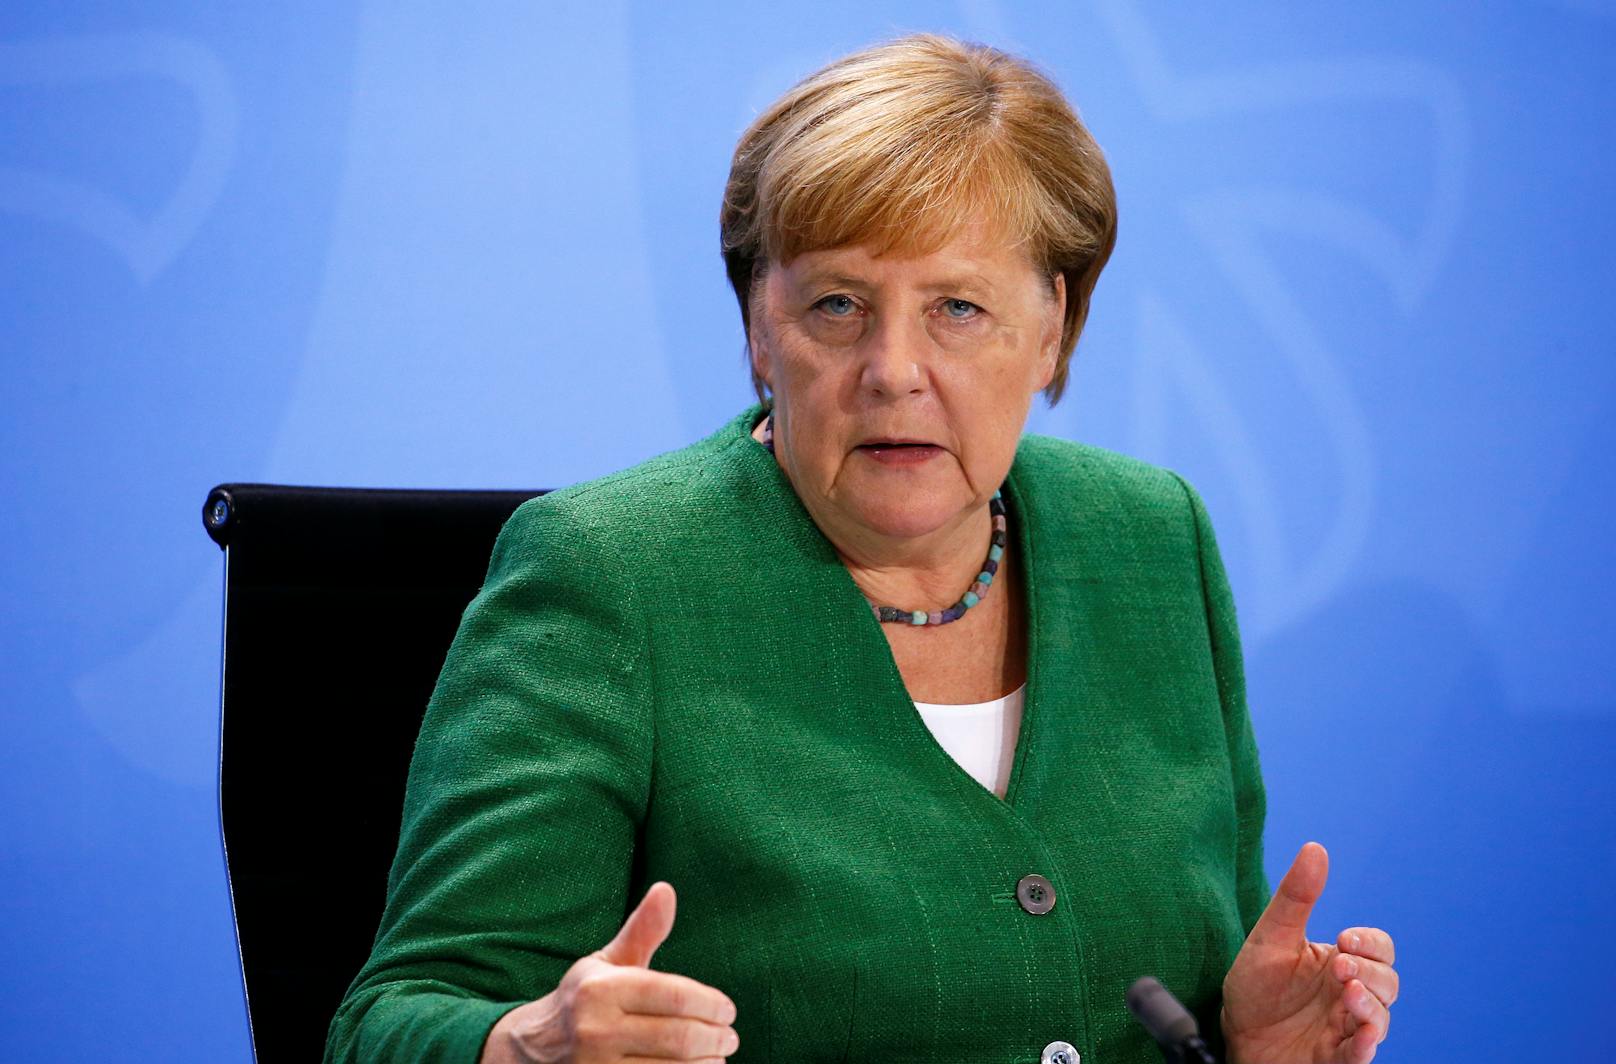 "Haltet die Klappe!": Tumulte bei Merkels Corona-Rede